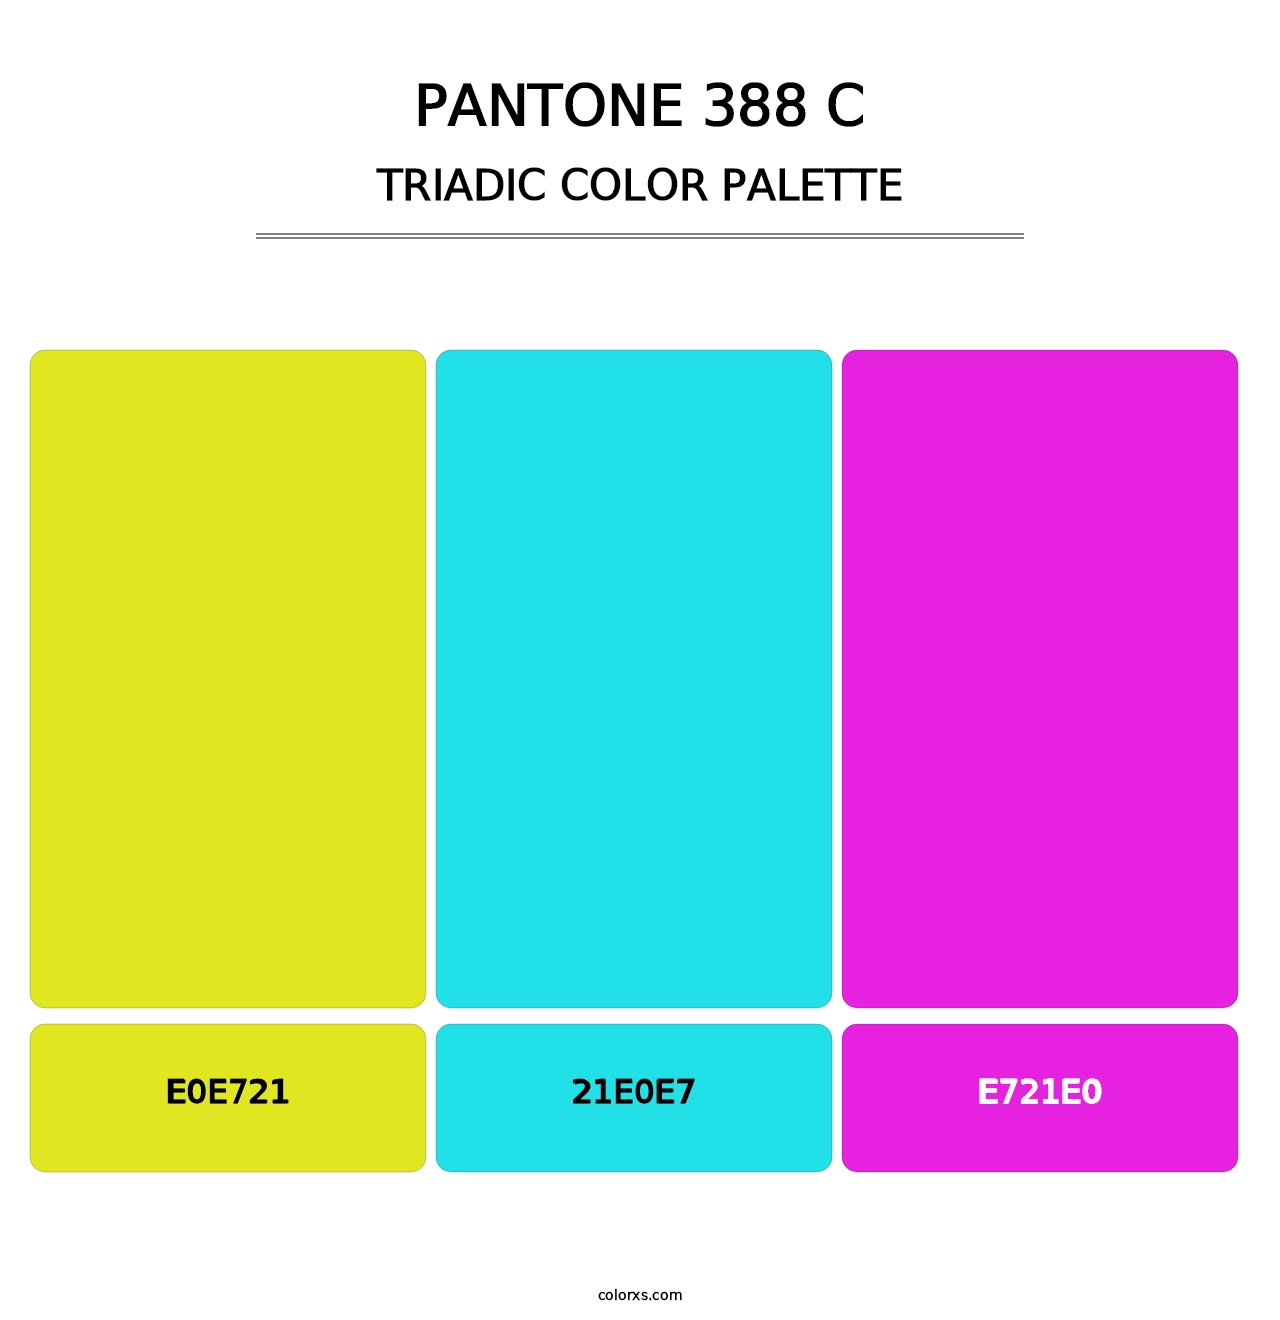 PANTONE 388 C - Triadic Color Palette